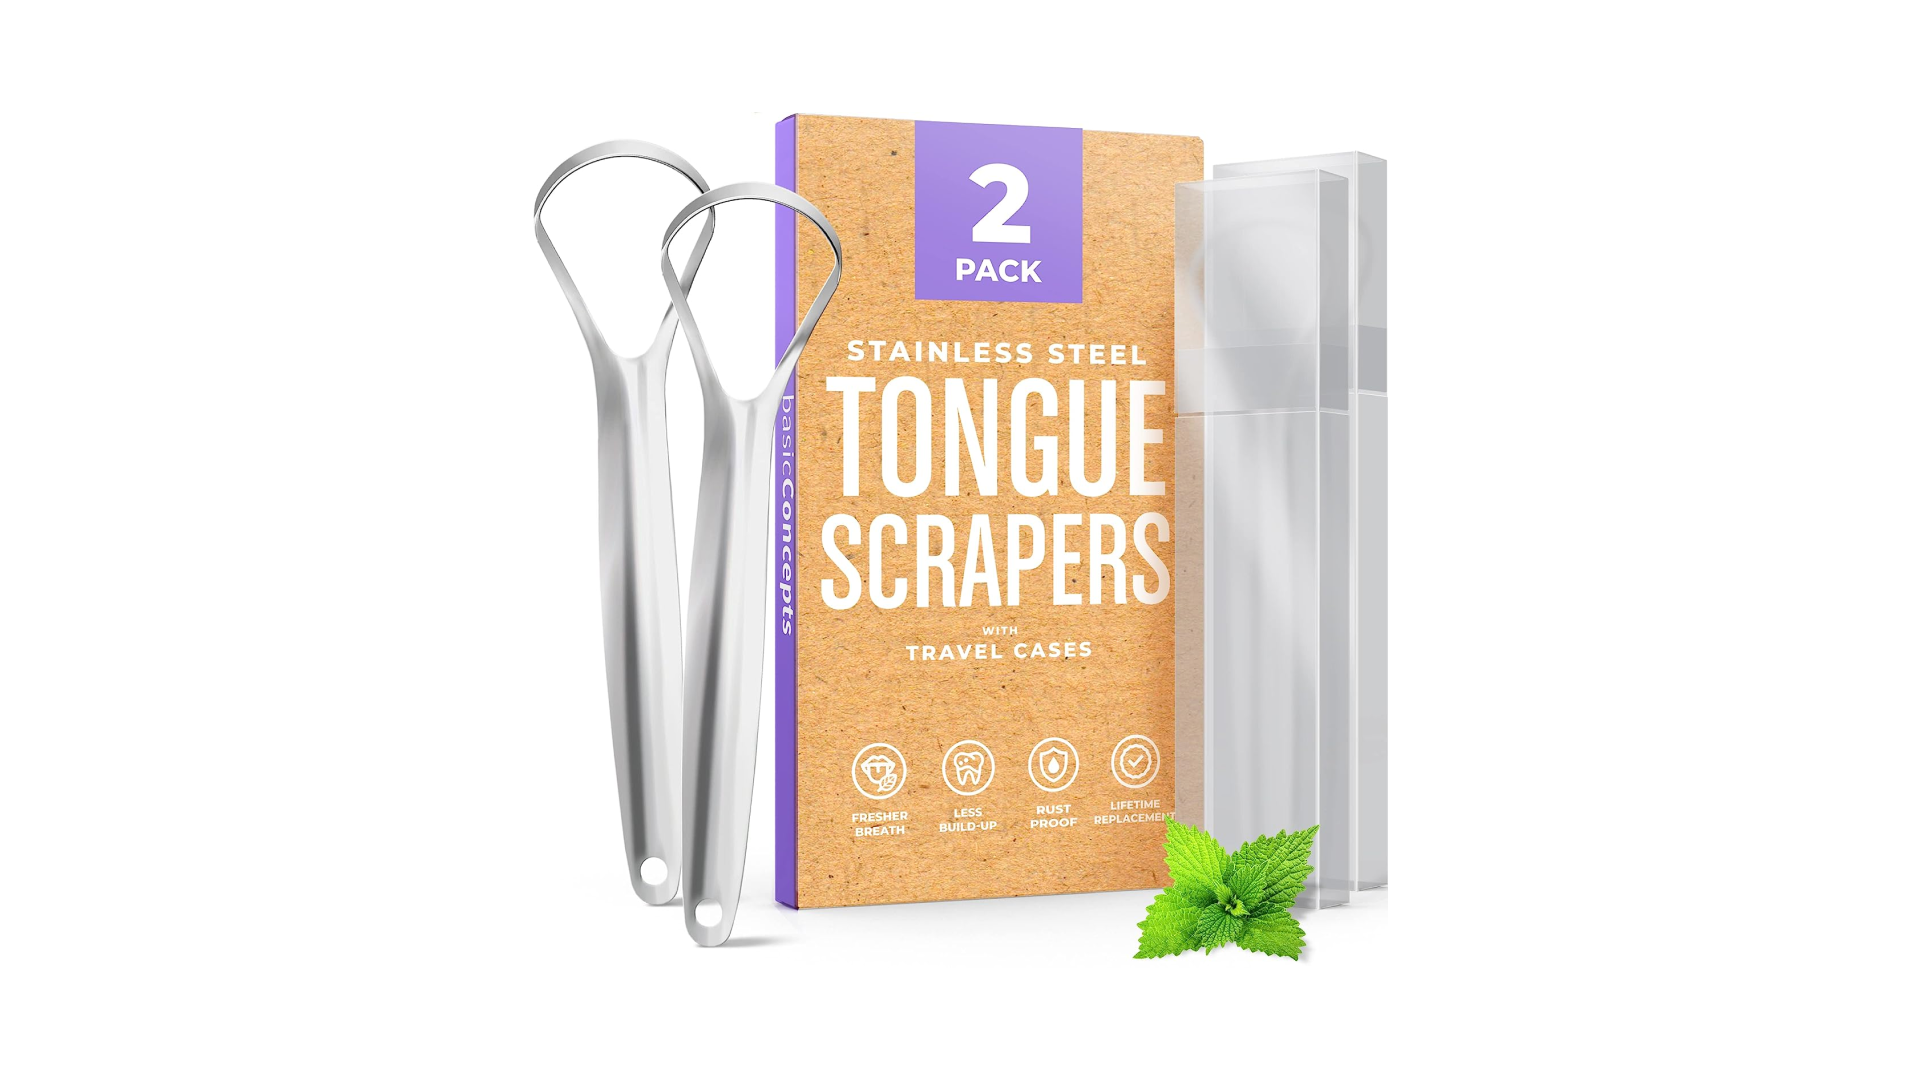 Tongue scrapers